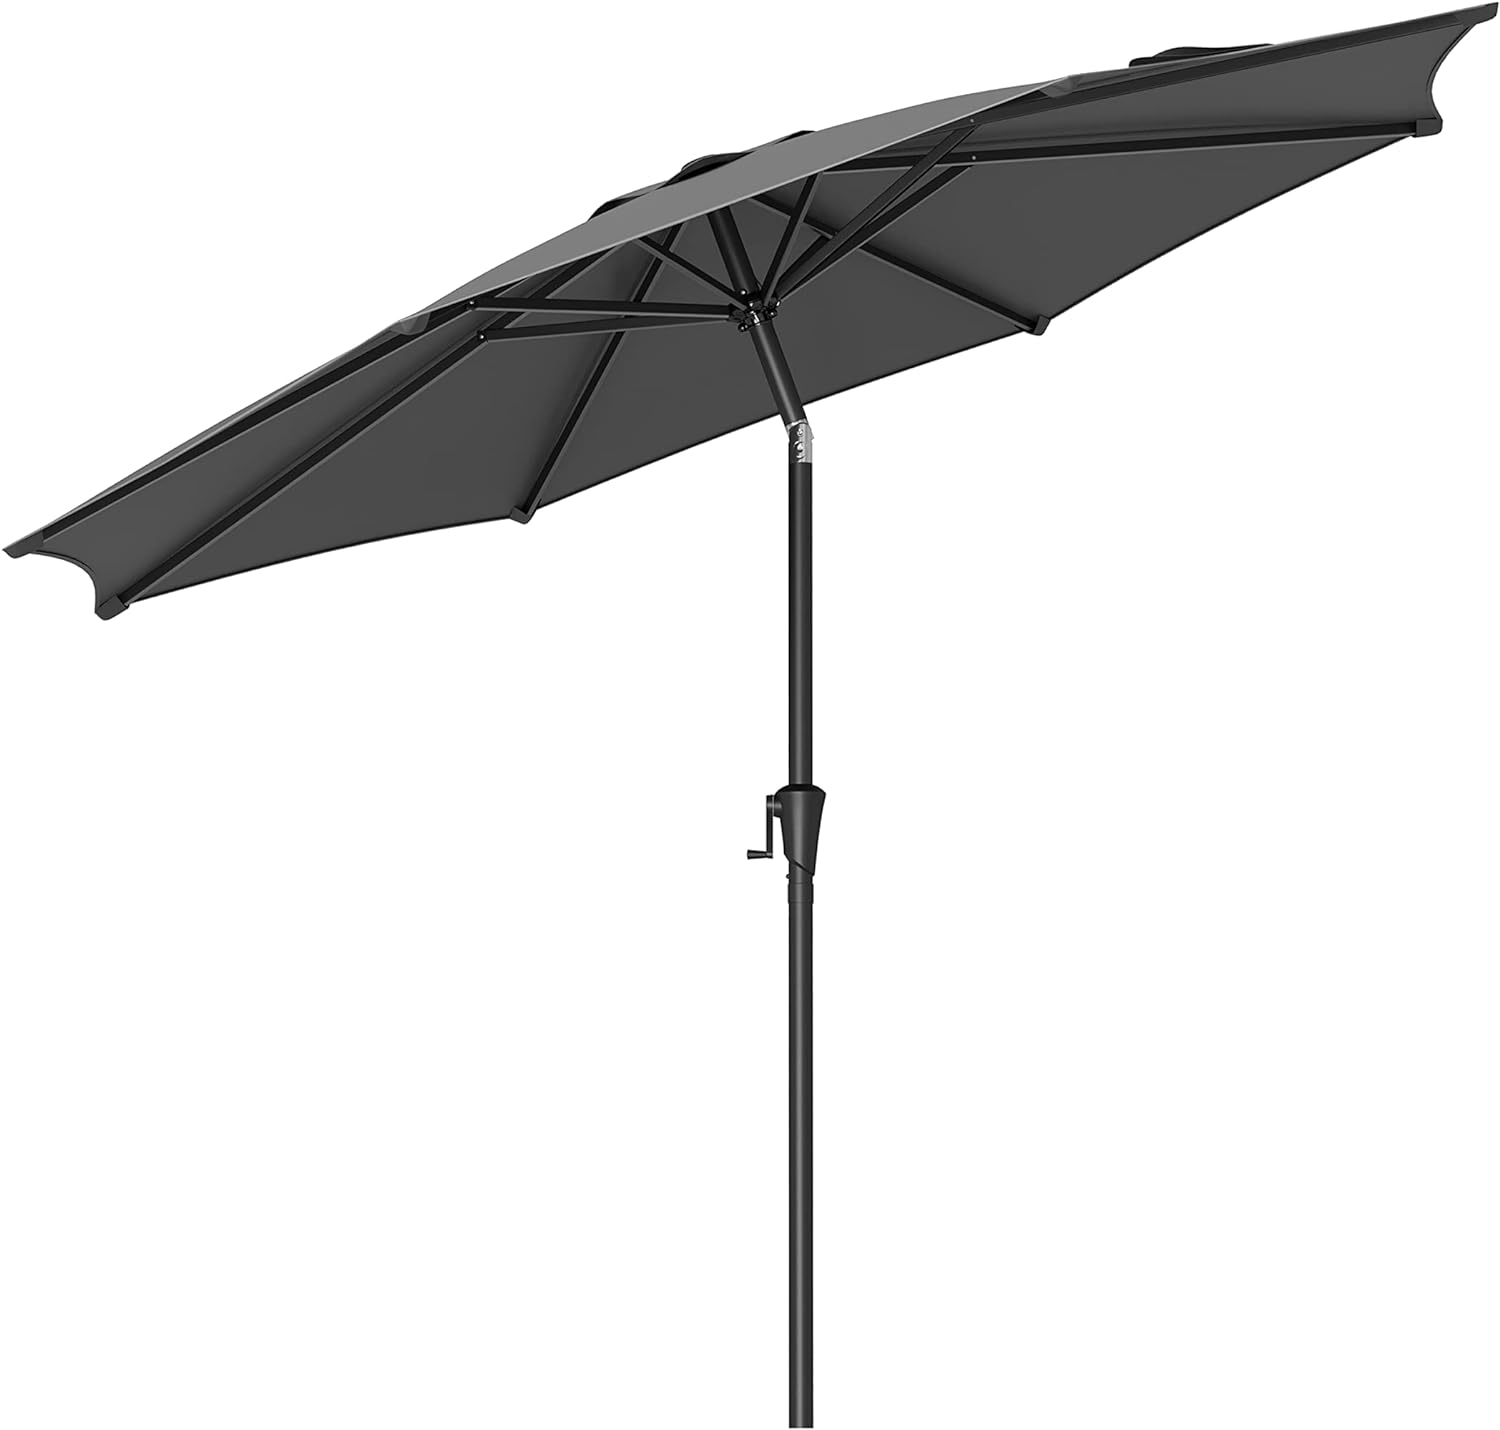 Billede af Stor luksus parasol i sort - 3 meter hos Relaxed Living